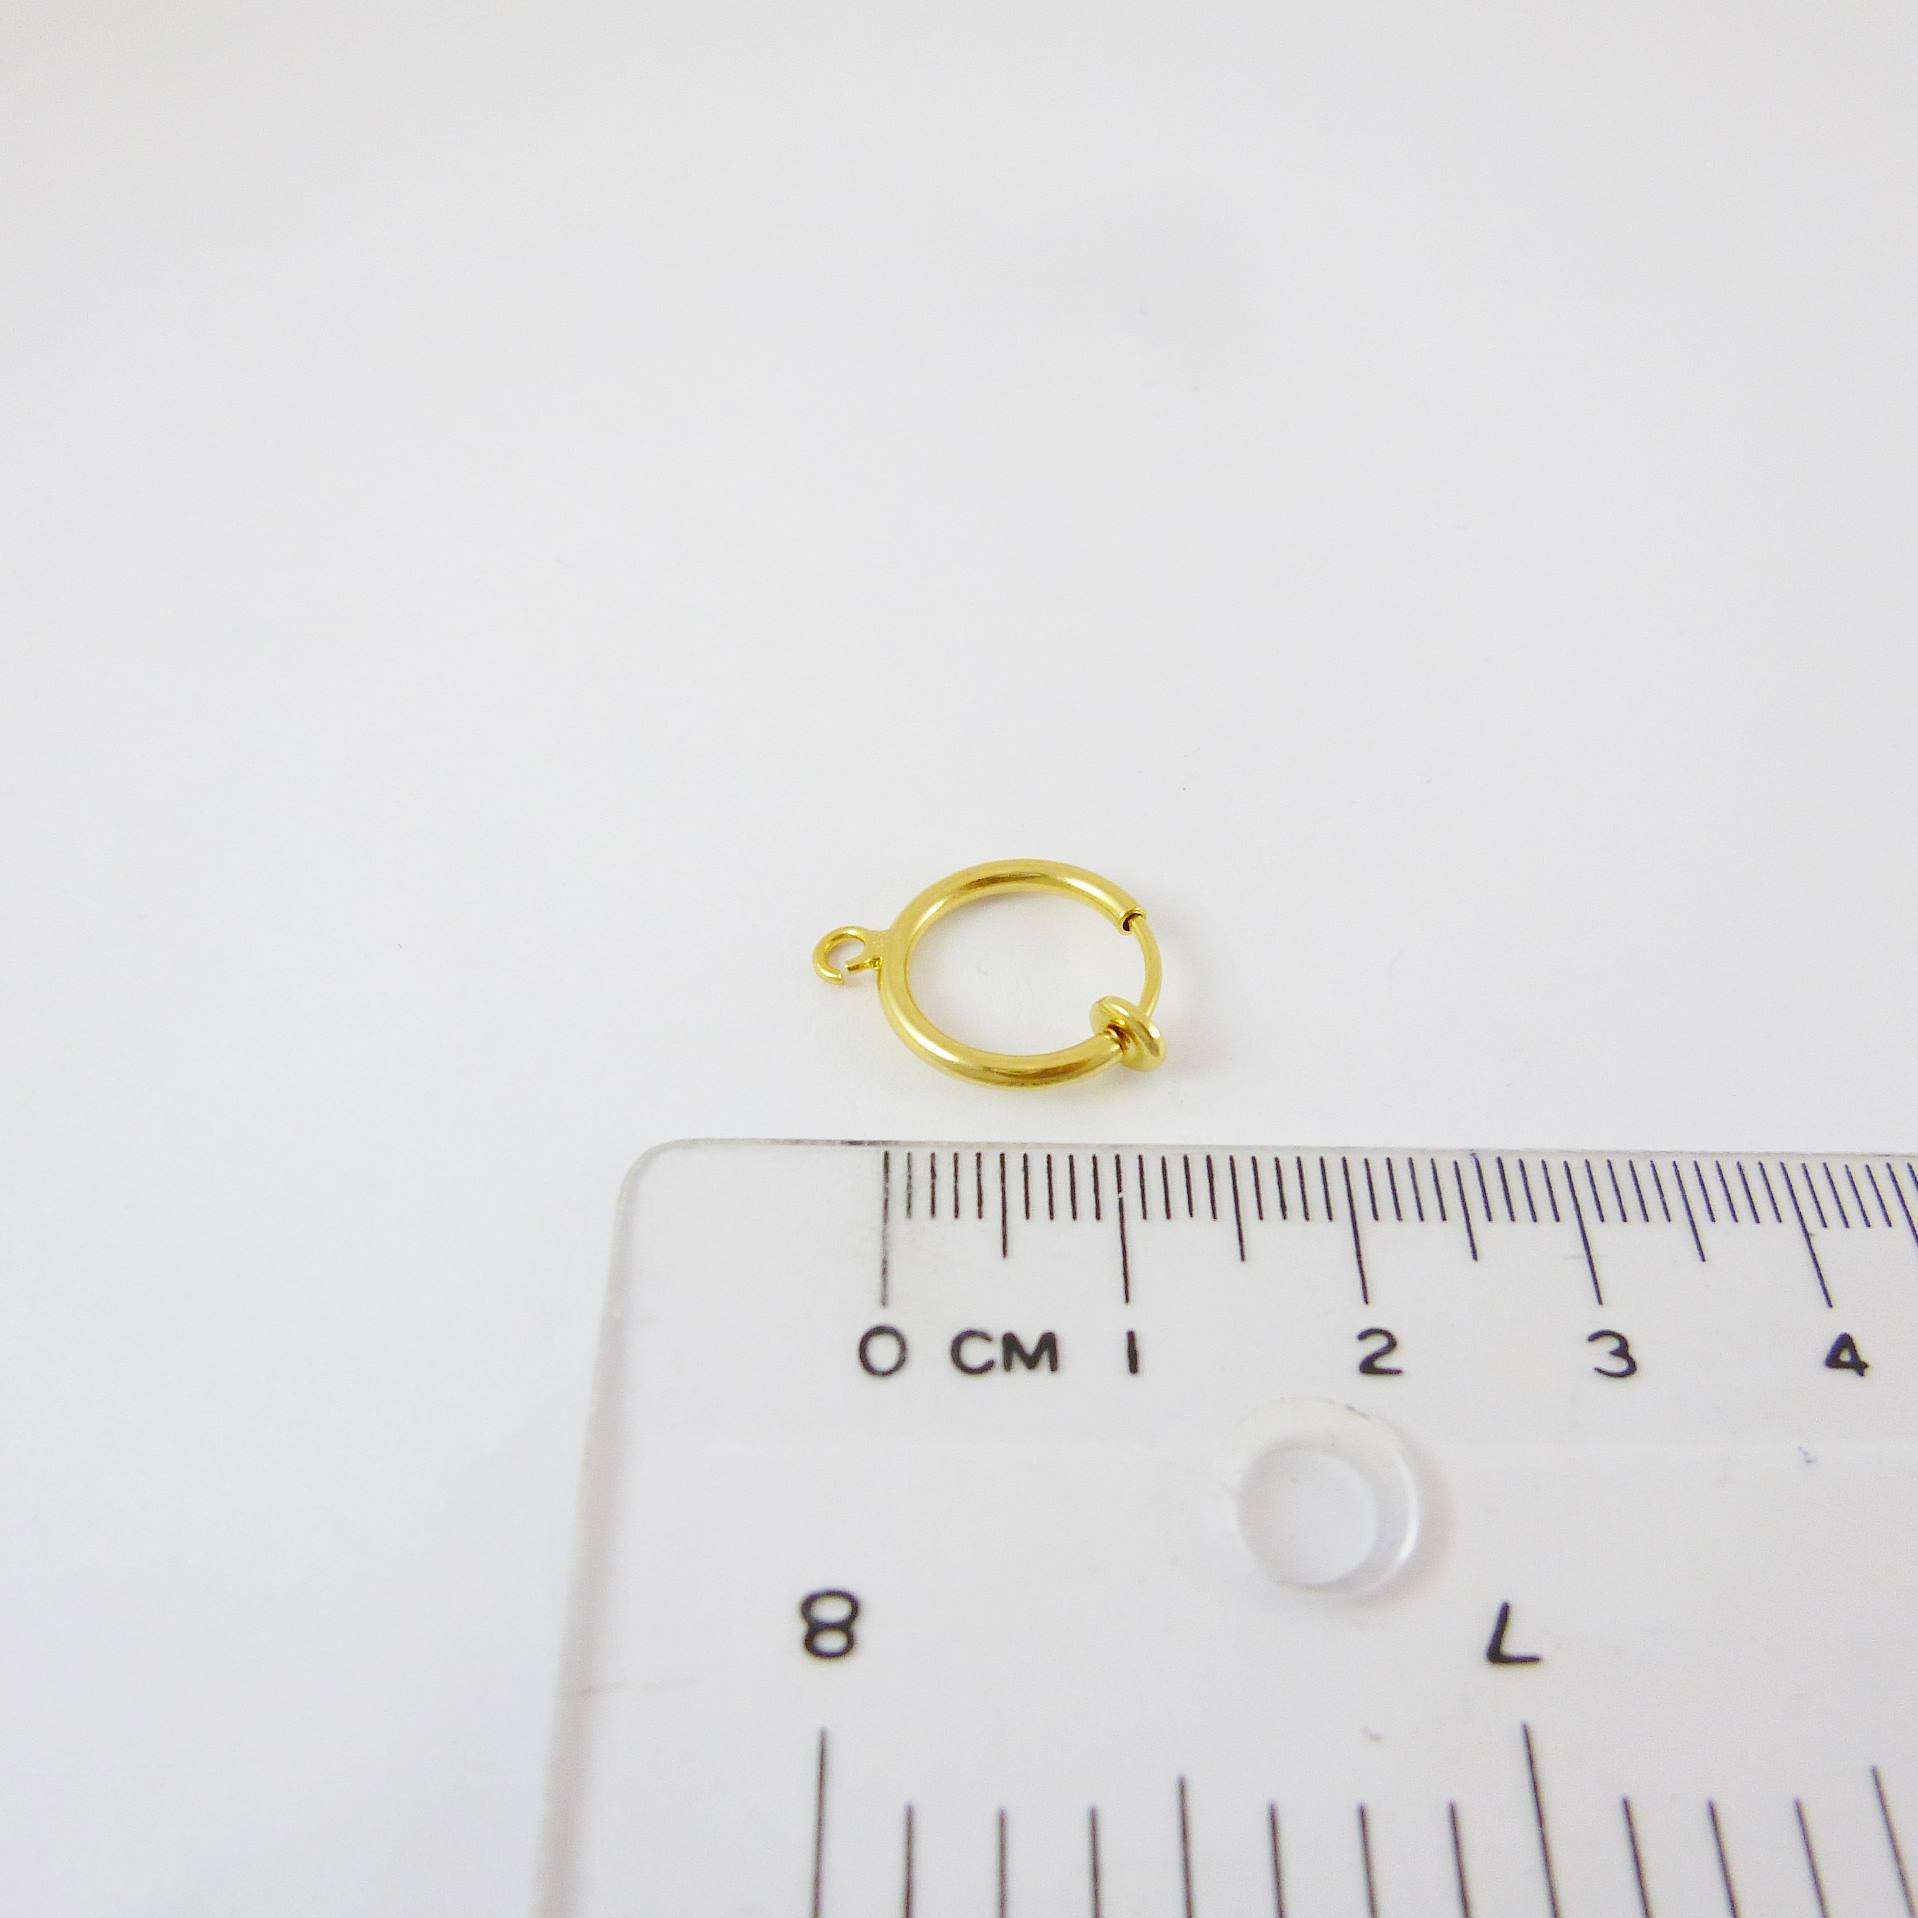 銅鍍金色圓形彈簧耳夾圈-12mm